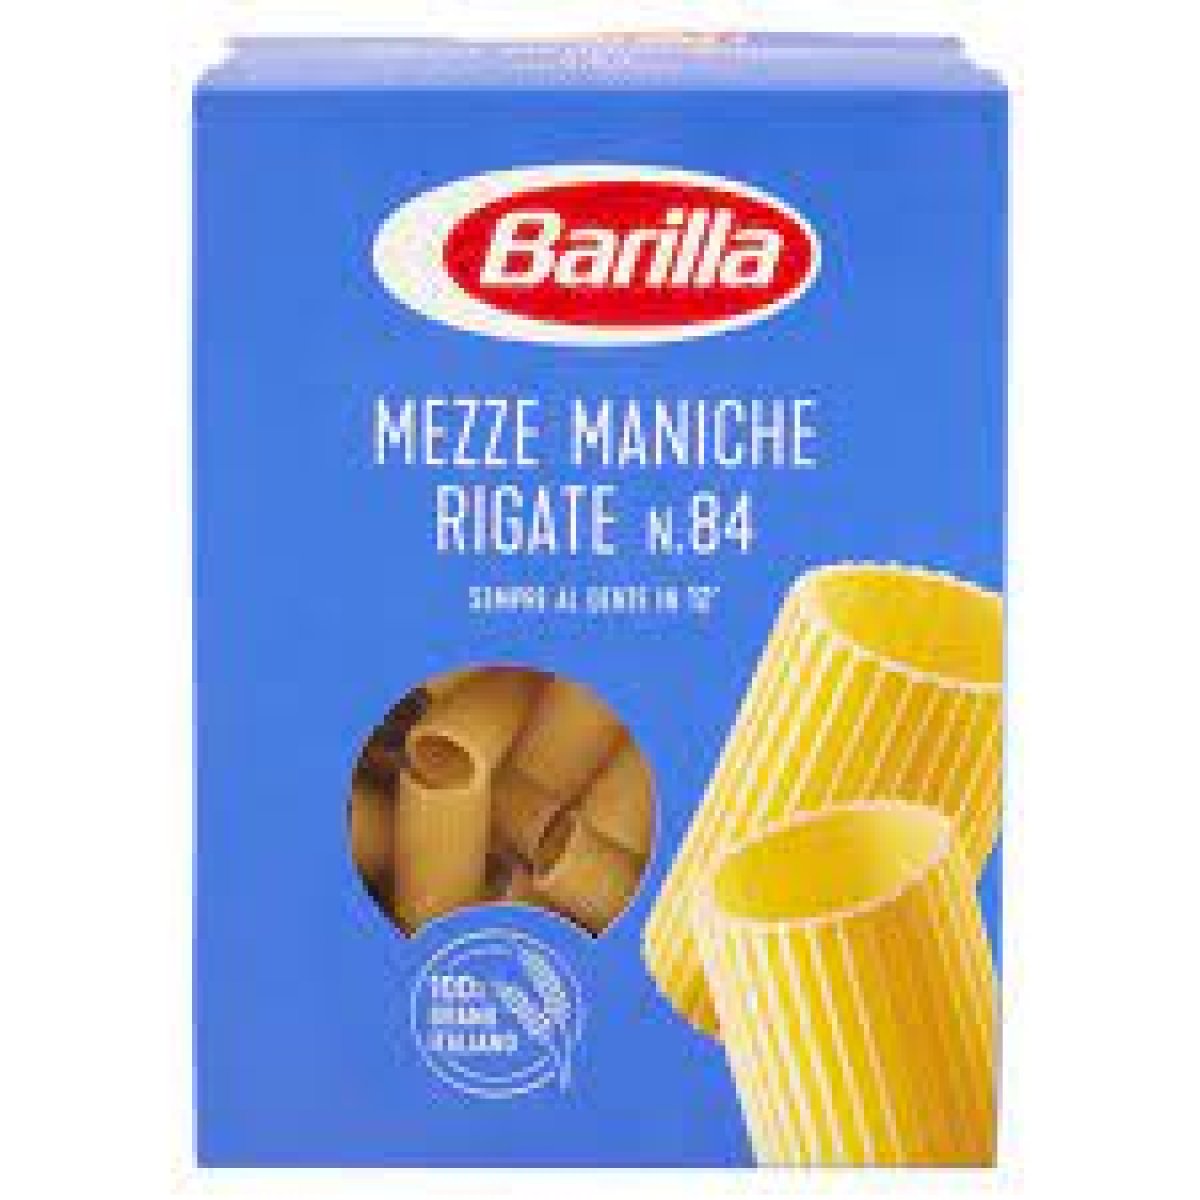 mezze maniche rigate n°84 barilla